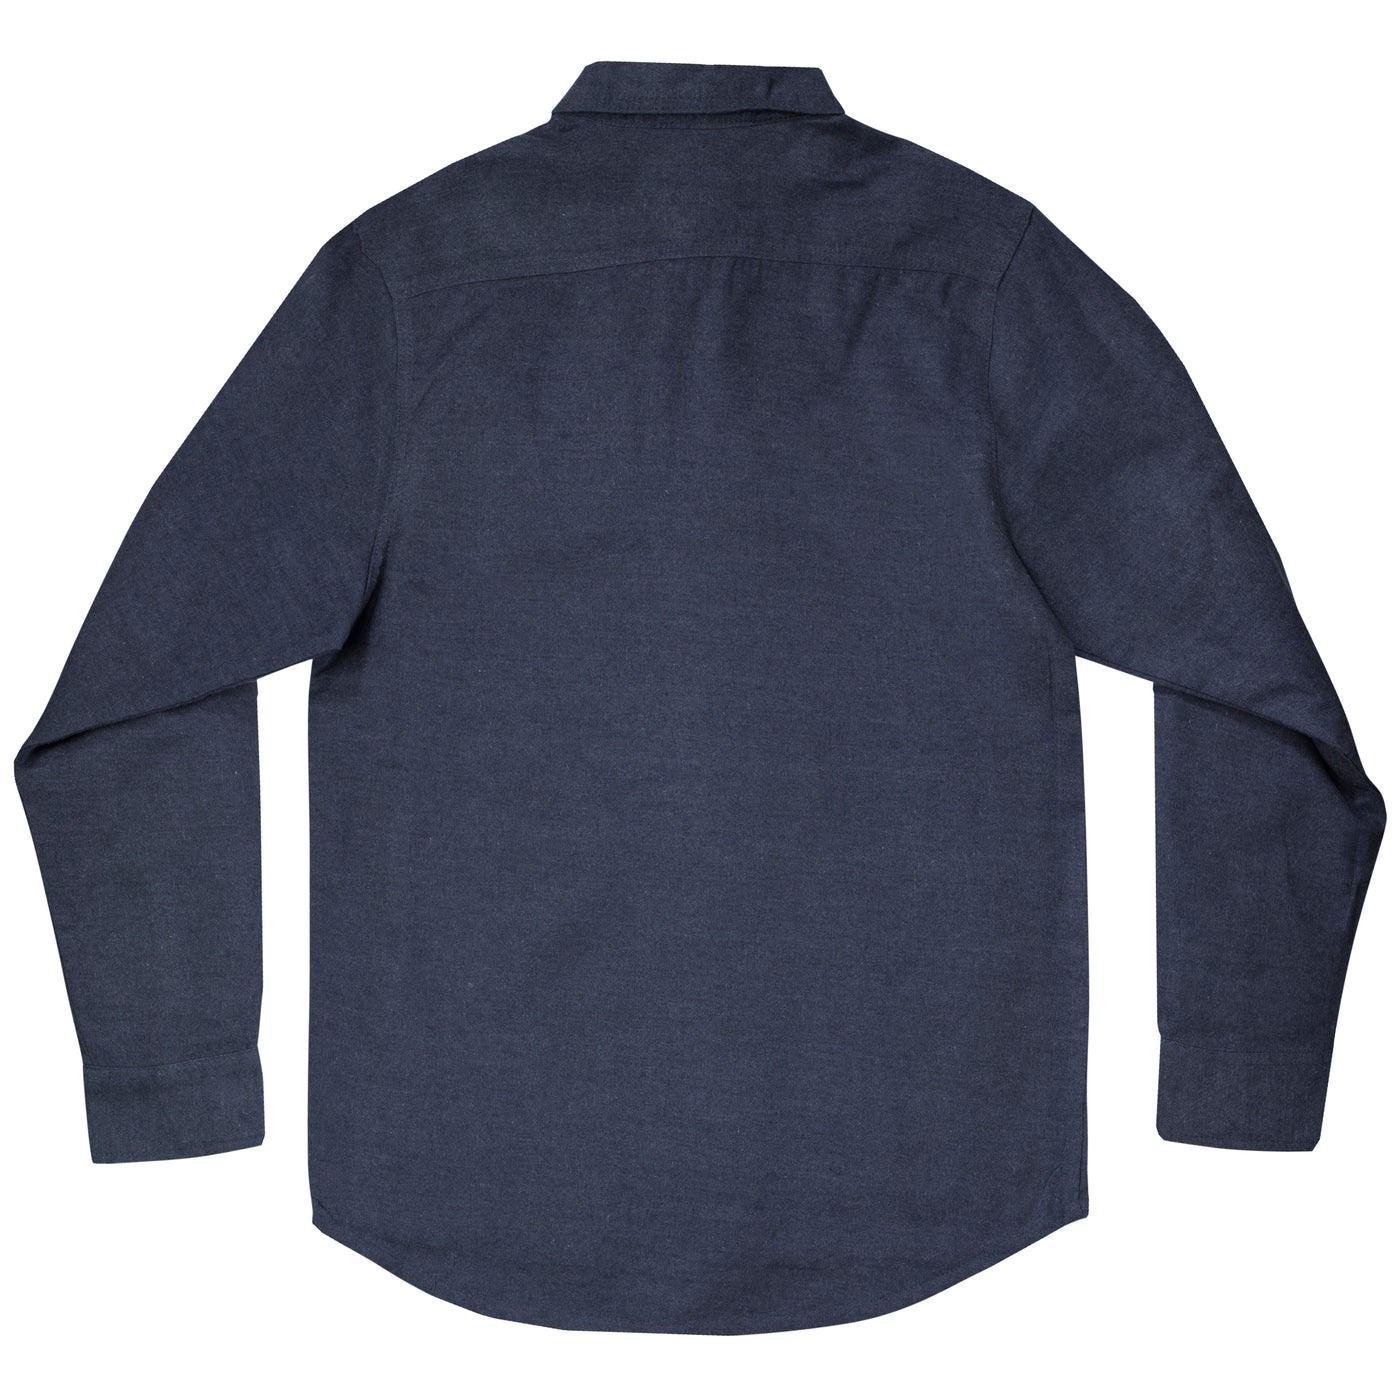 Mossy Oak Men's Flannel Shirt Dress Blue Back